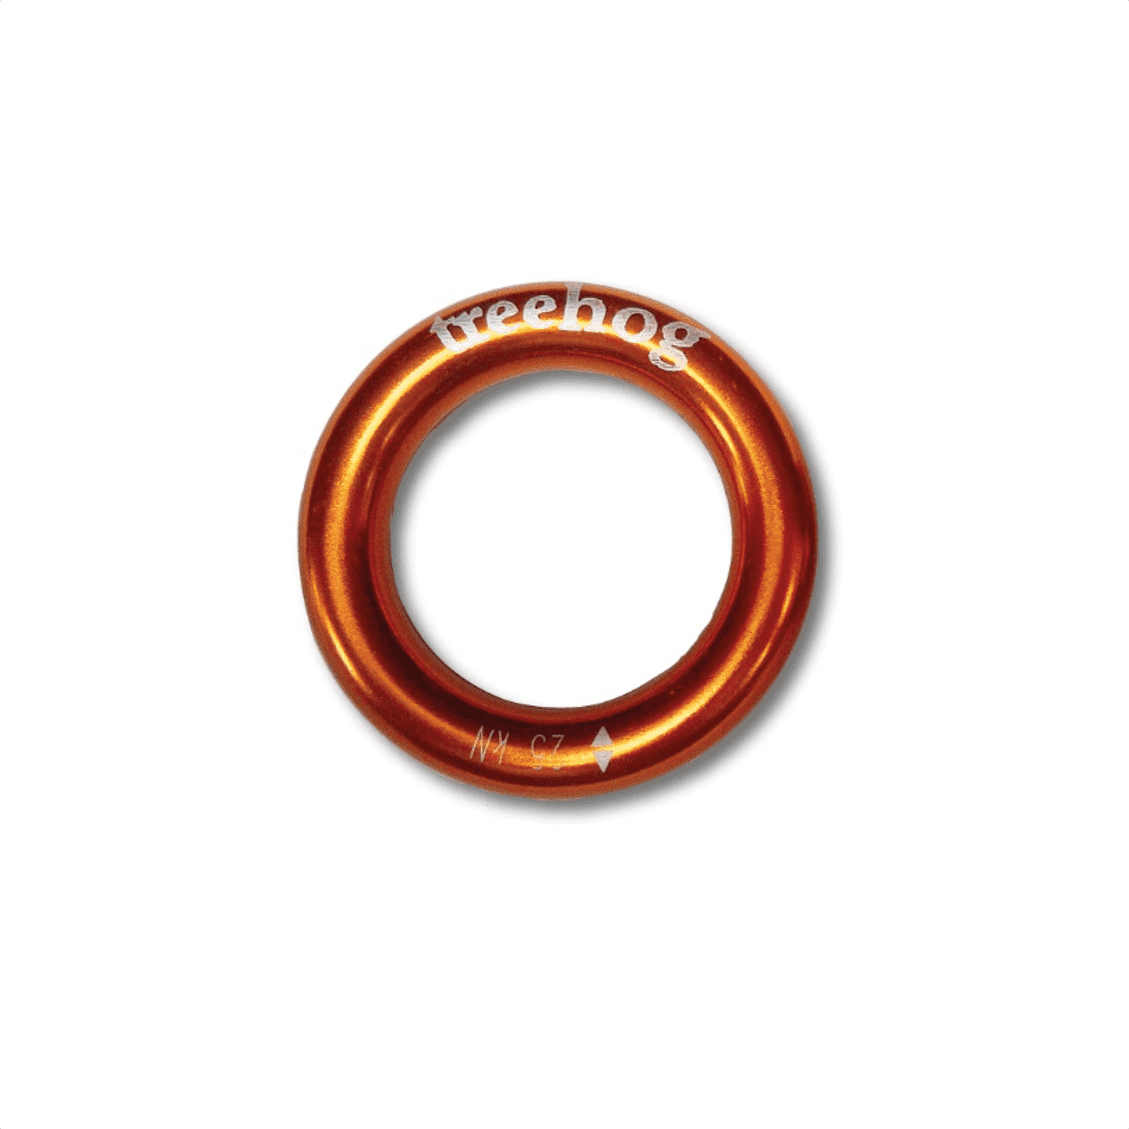 Treehog TH1028 Large Aluminium Ring